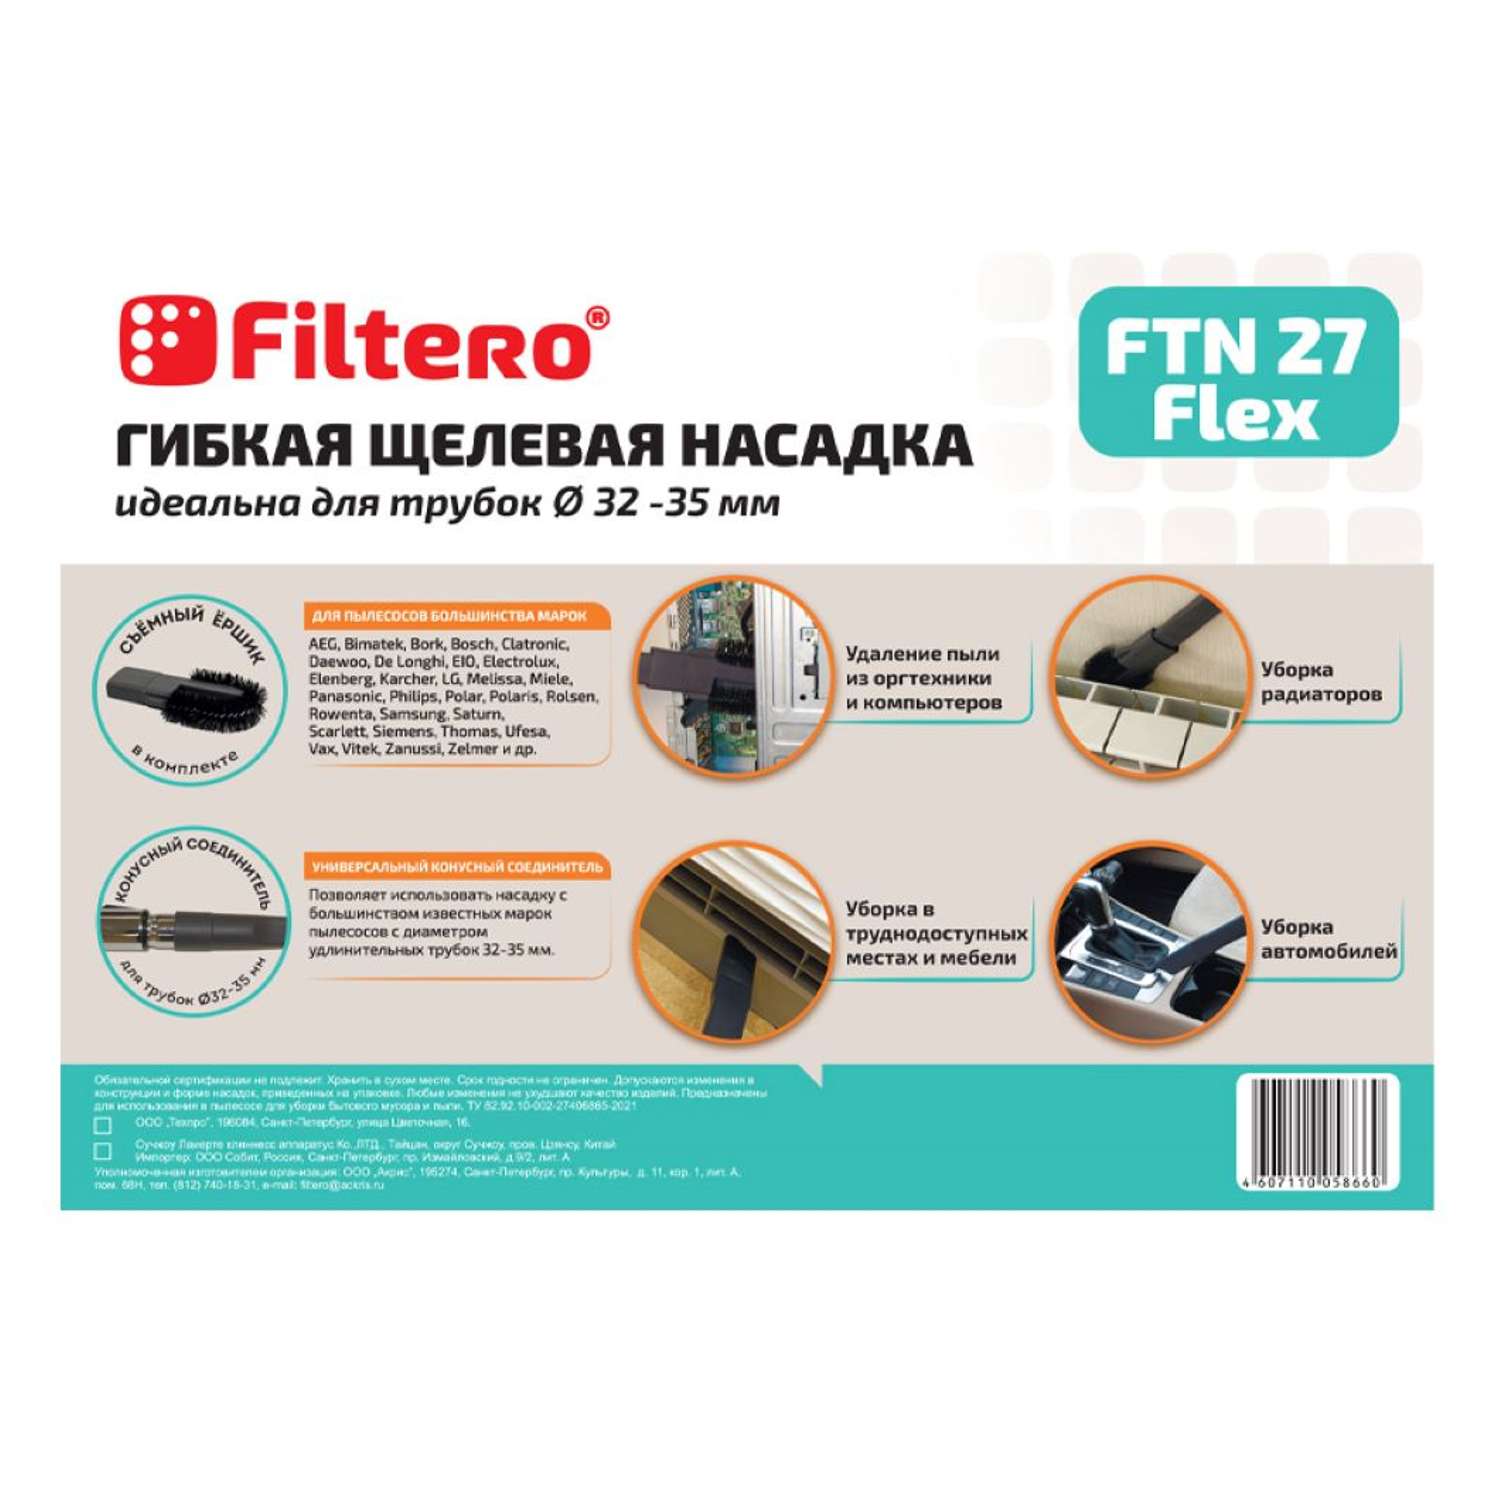 Насадка для пылесоса Filtero FTN 27 Flex гибкая щелевая 32 - 35 мм - фото 2